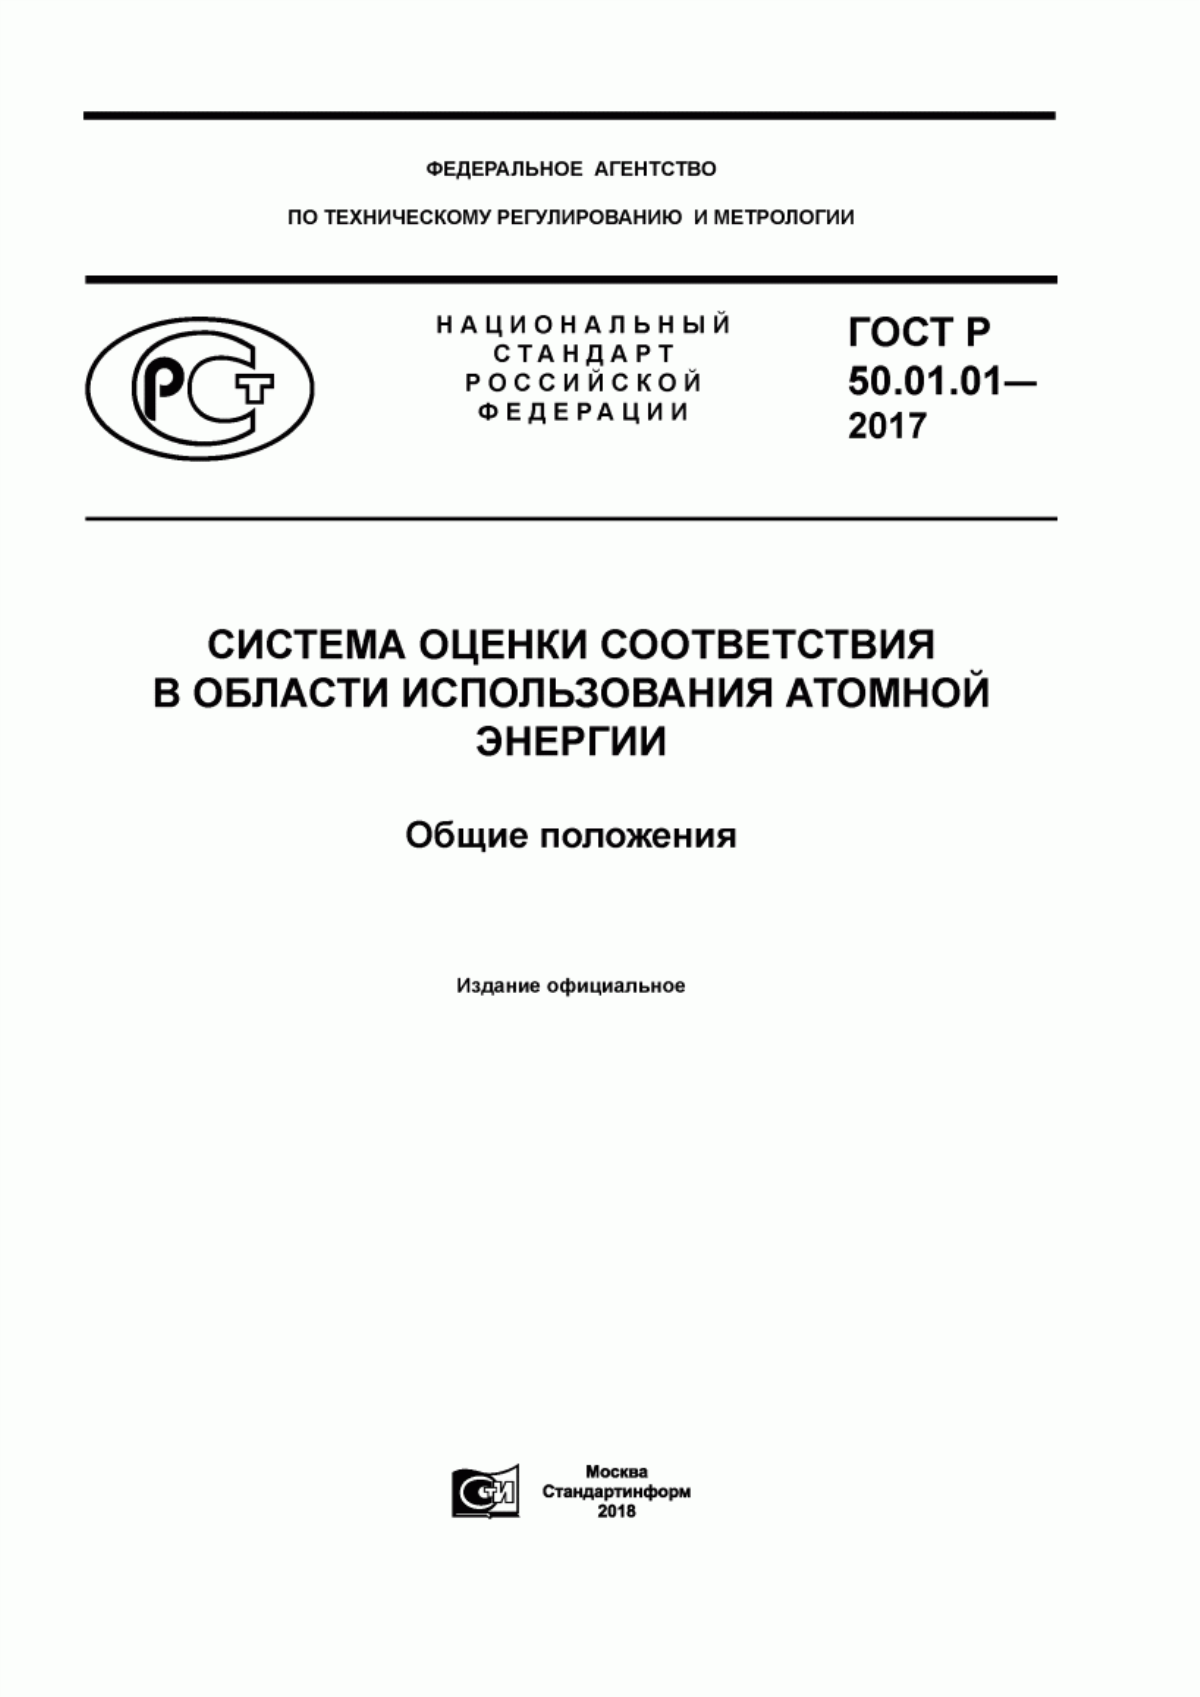 ГОСТ Р 50.01.01-2017 Система оценки соответствия в области использования атомной энергии. Общие положения